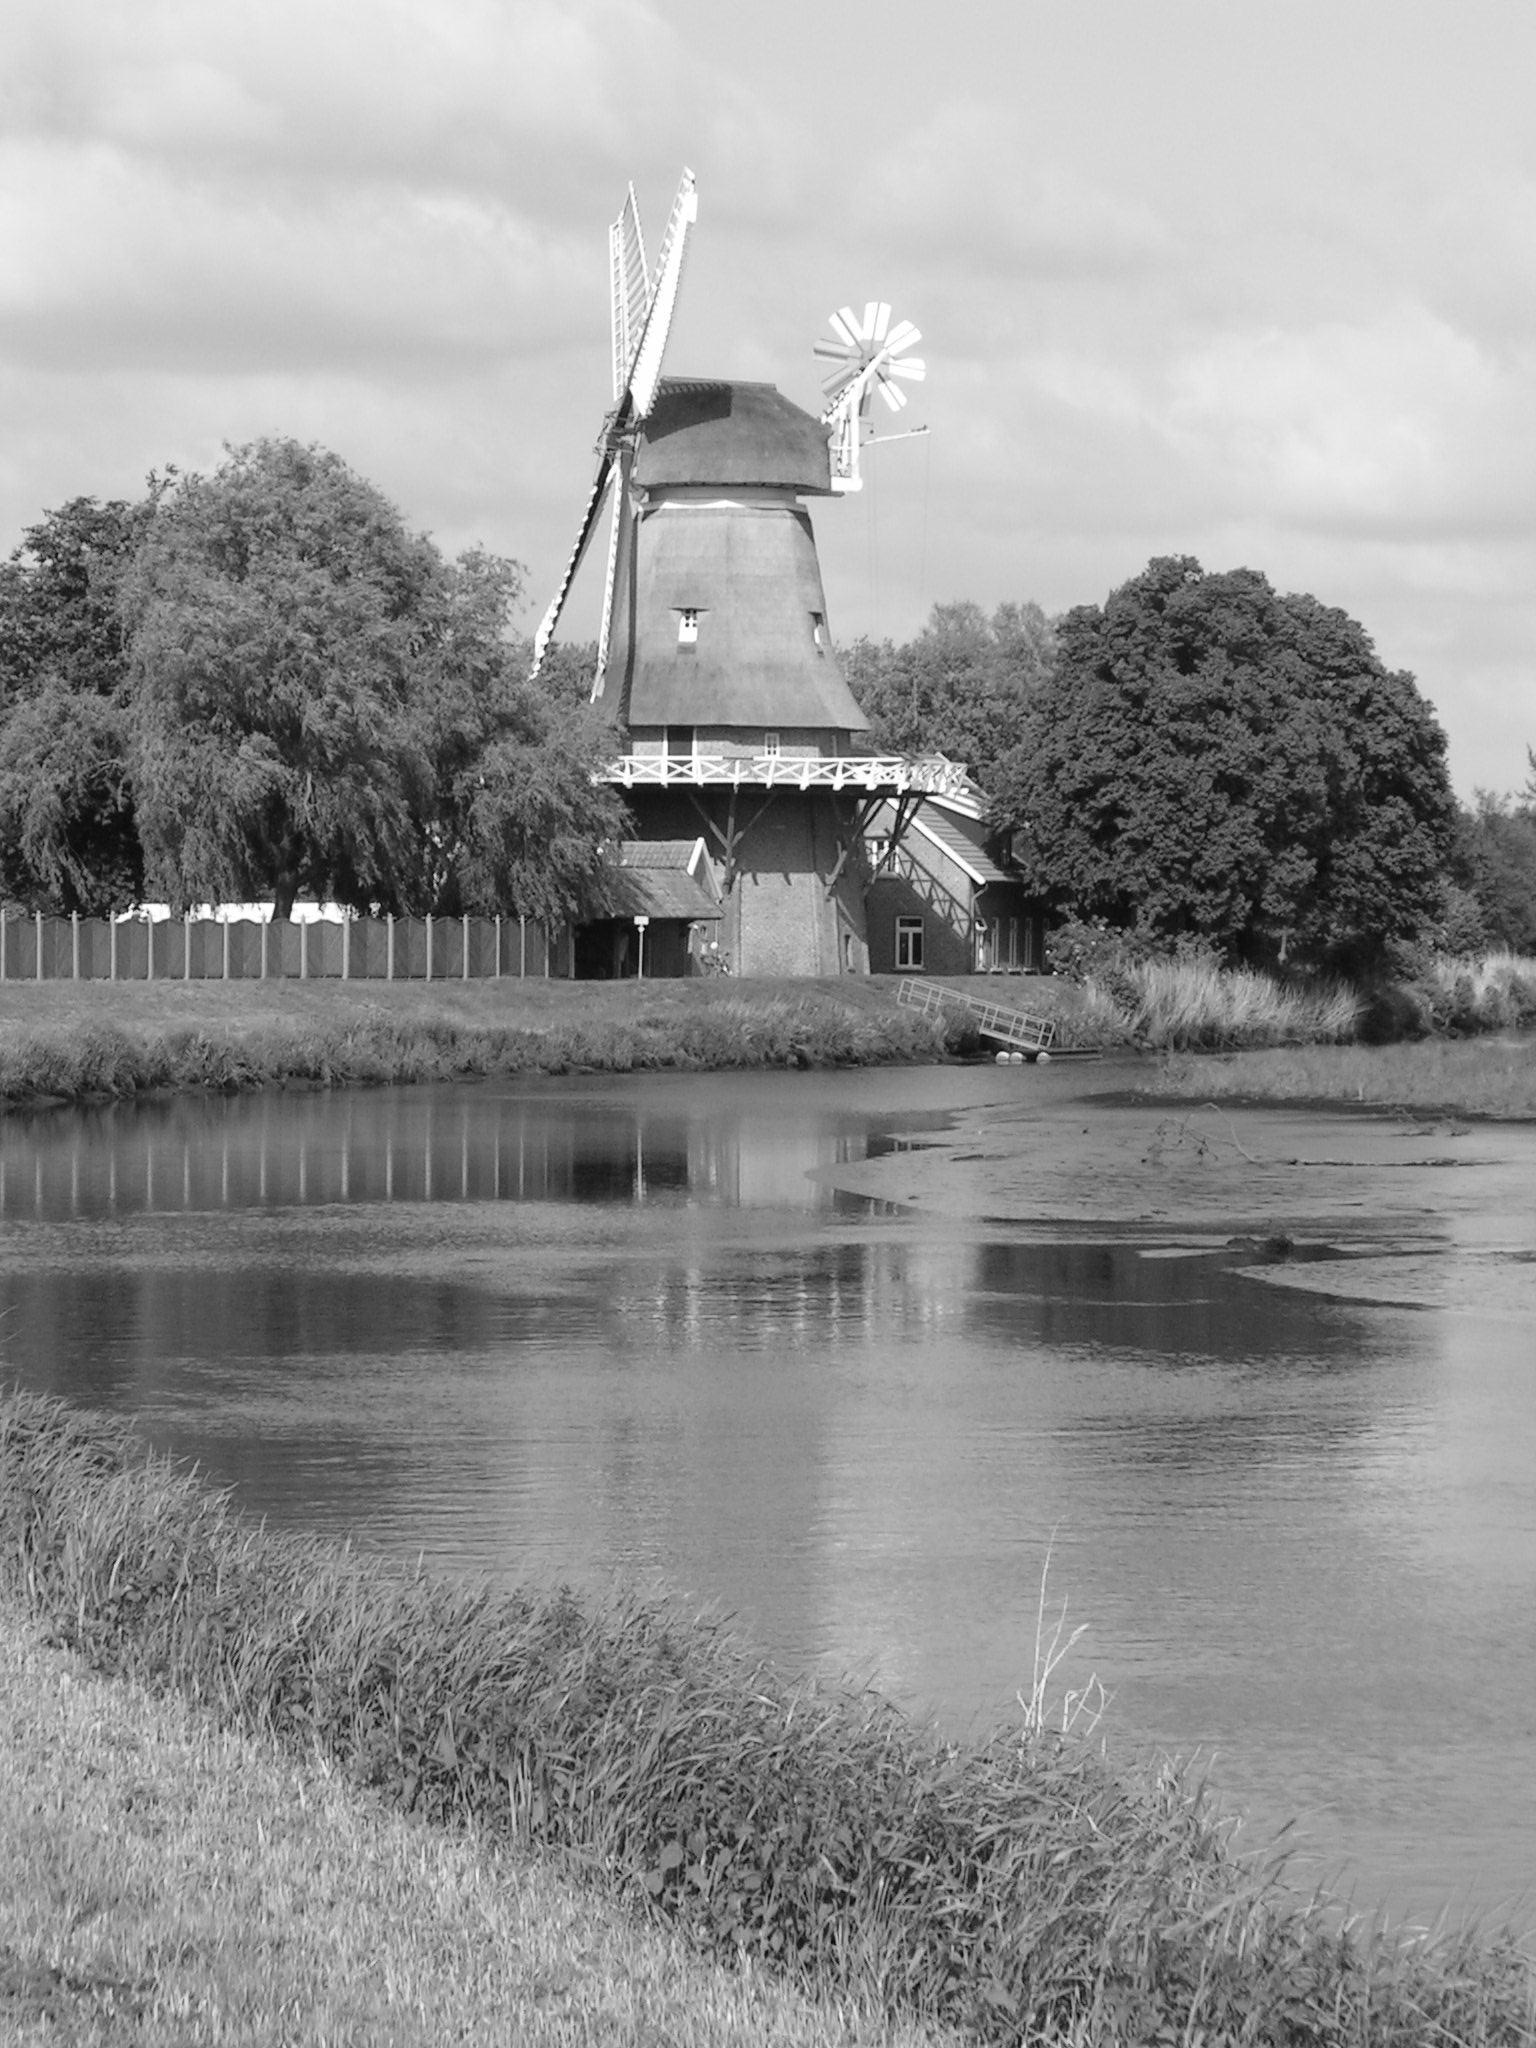 Auf dem 1. Bild sieht man eine Windmühle, die für das Ammerland steht.